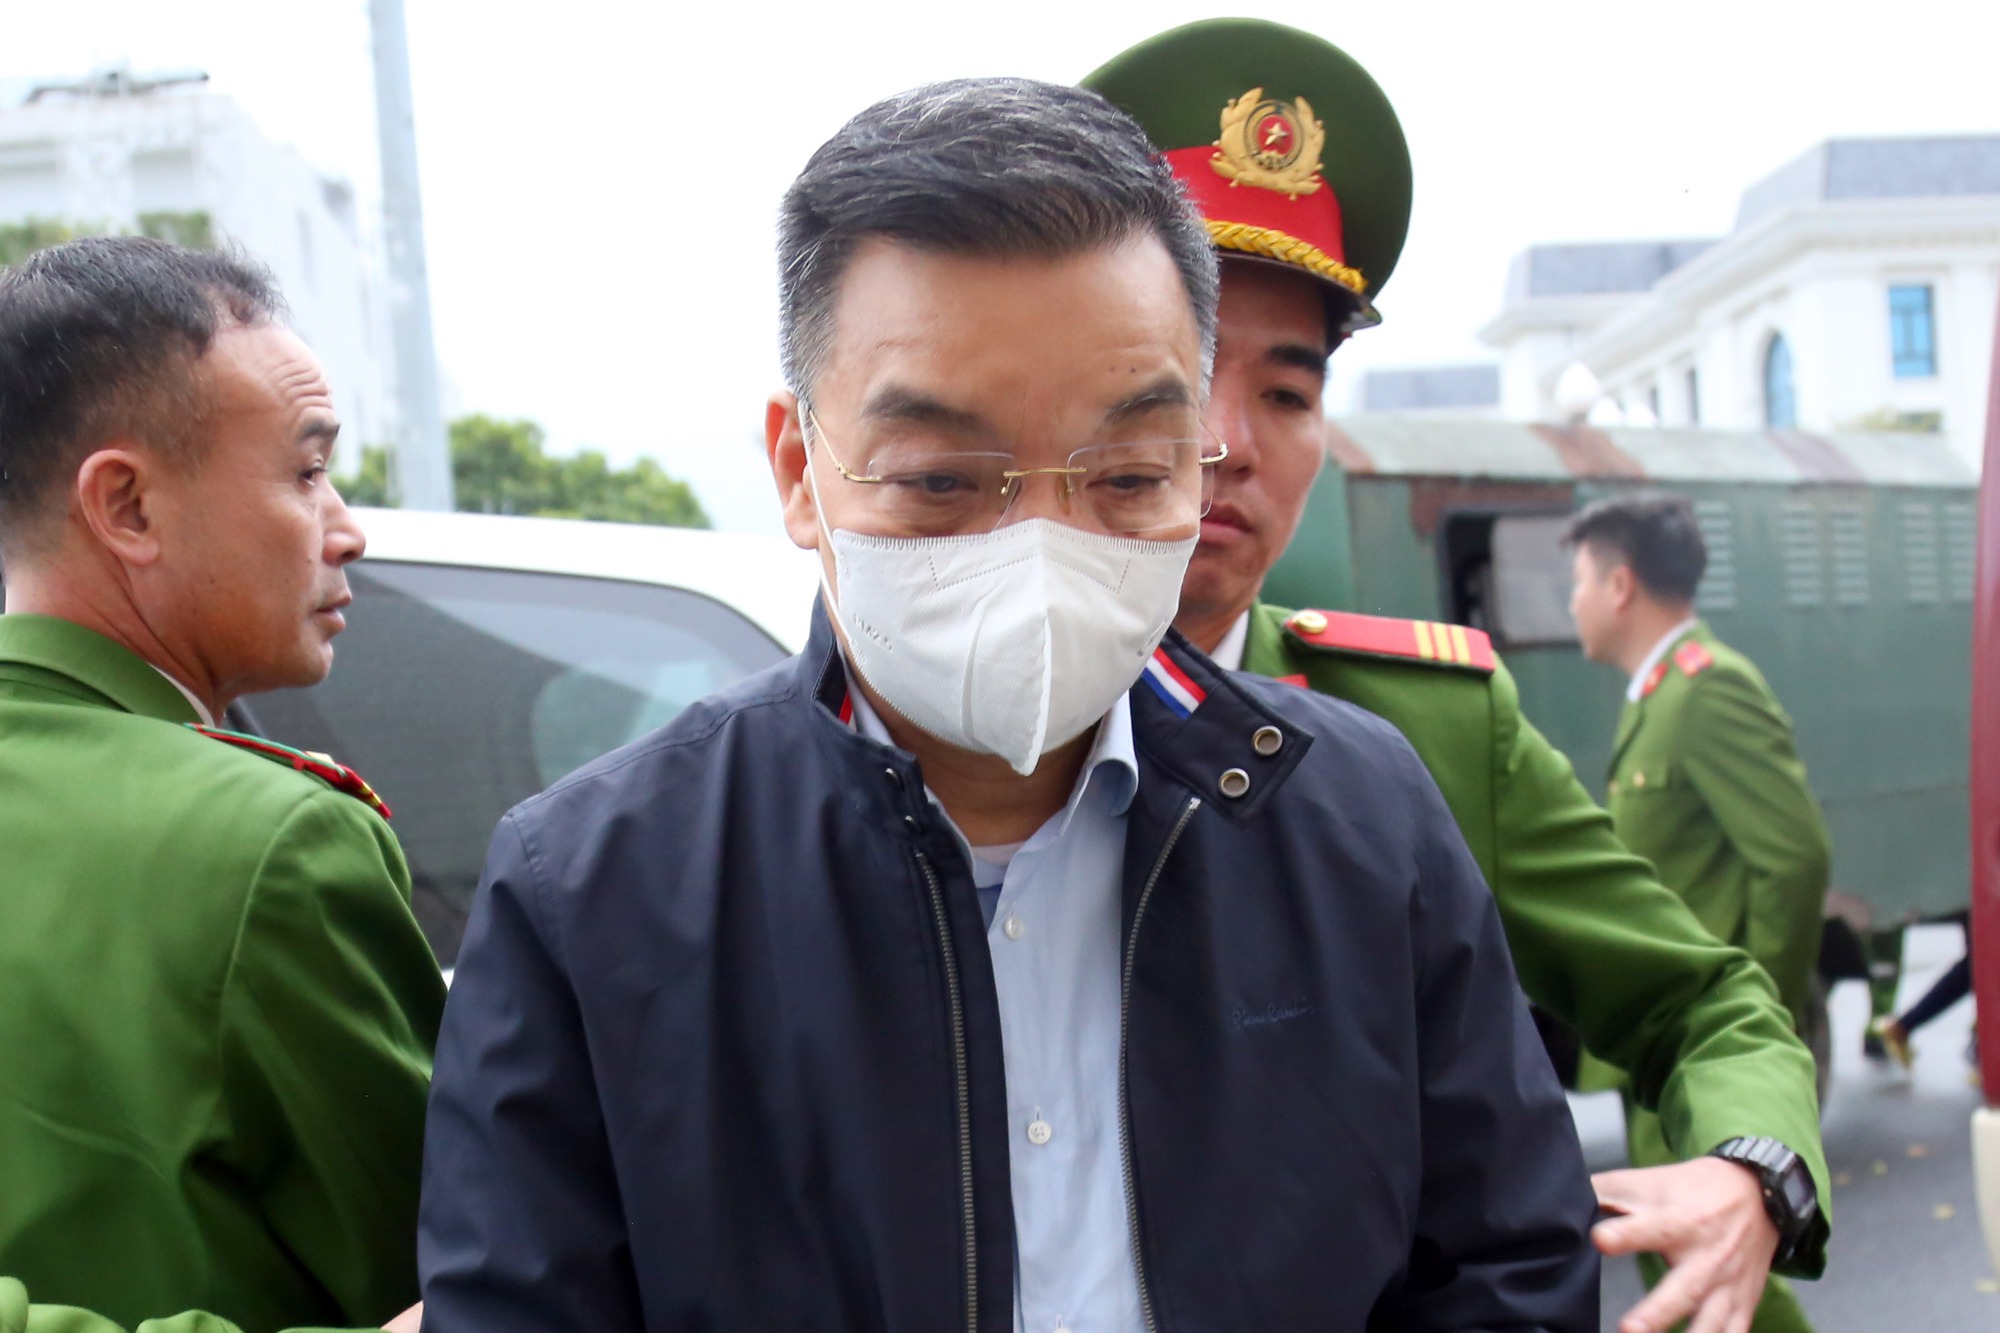 Ông Nguyễn Thanh Long lĩnh 18 năm tù, Chu Ngọc Anh 3 năm tù- Ảnh 1.